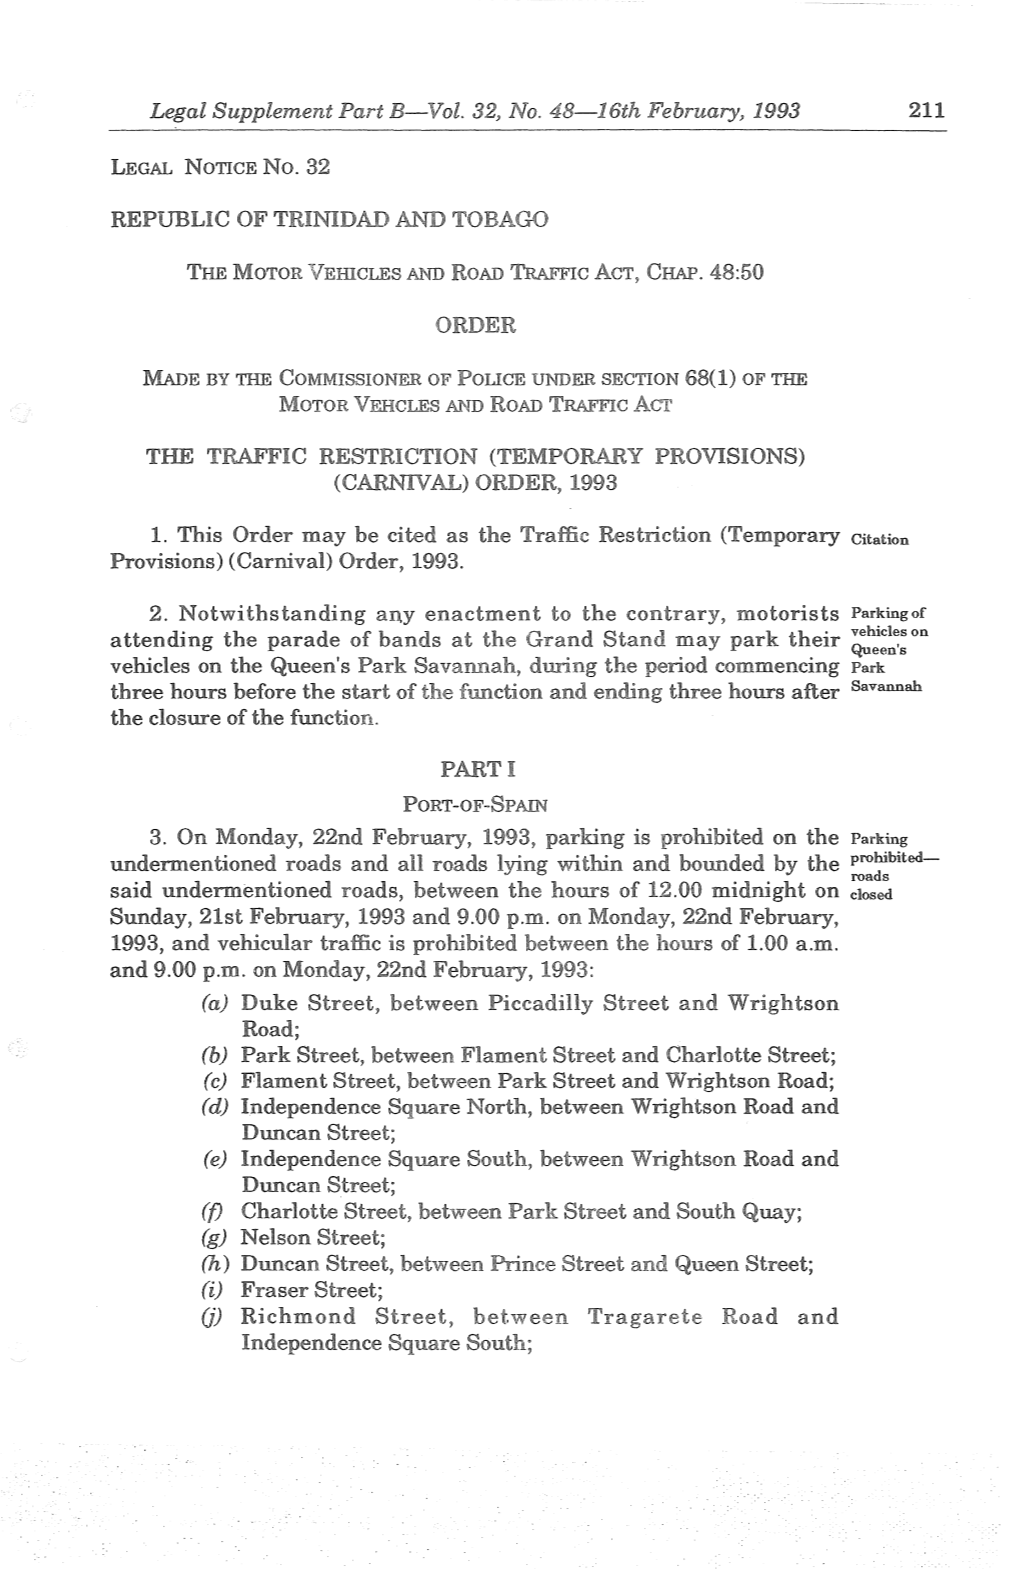 Legal Supplement Part B-Vol. 32, No. 48-16Th February, 1993 REPUBLIC